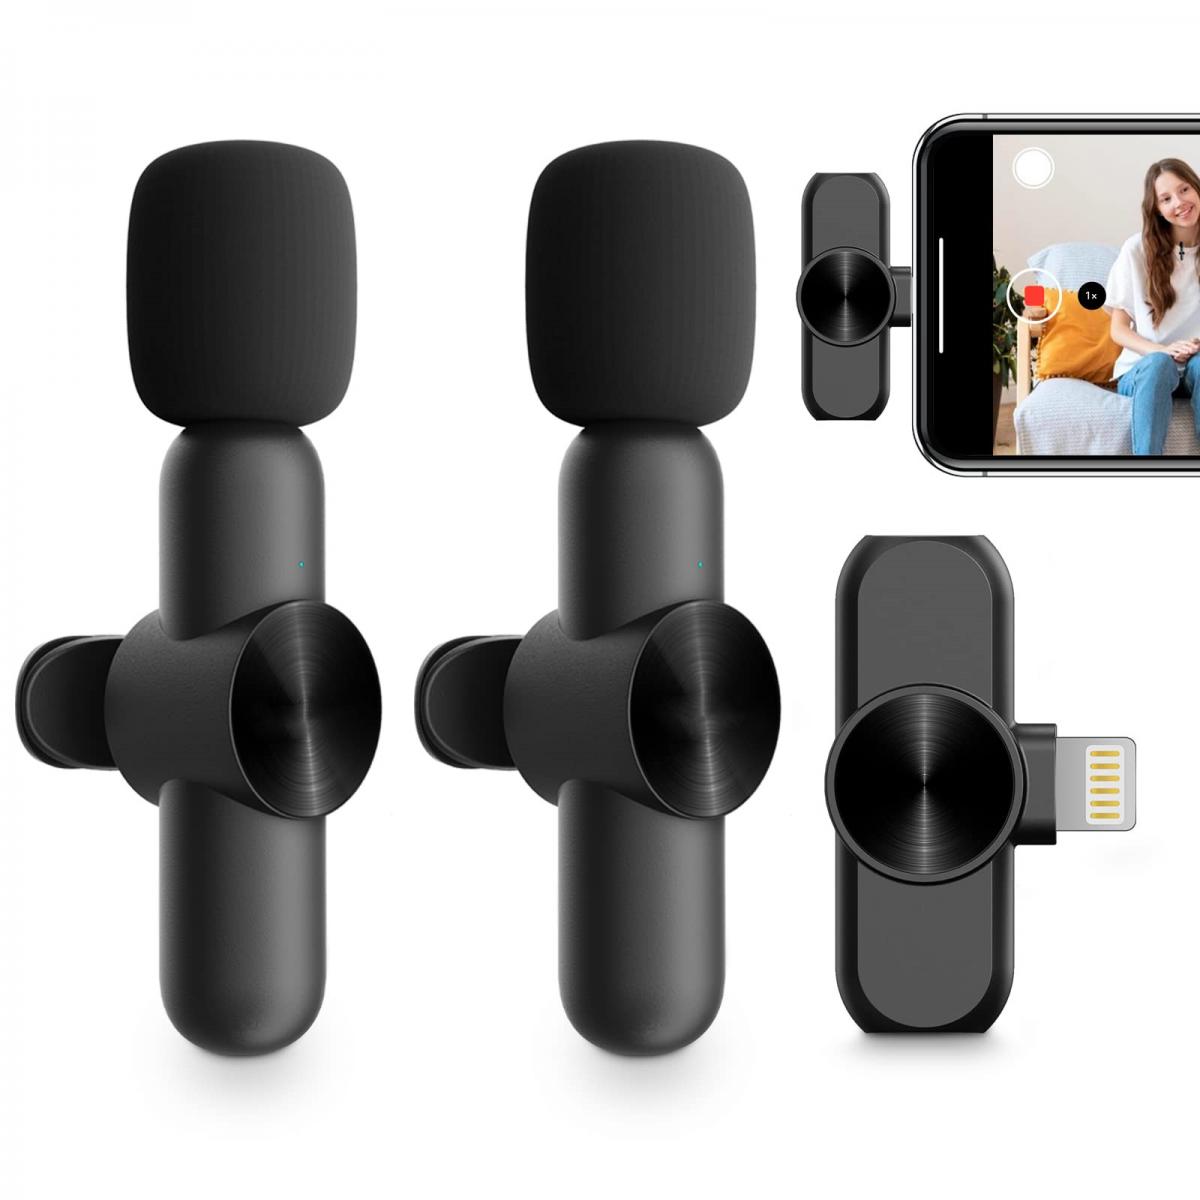 Micro Cravate Sans Fil pour iPh-one/iOS/Android, Micro Cravate Portable  Plug & Play réduction du bruit pour , Facebook, Twitter, Tiktok  Video